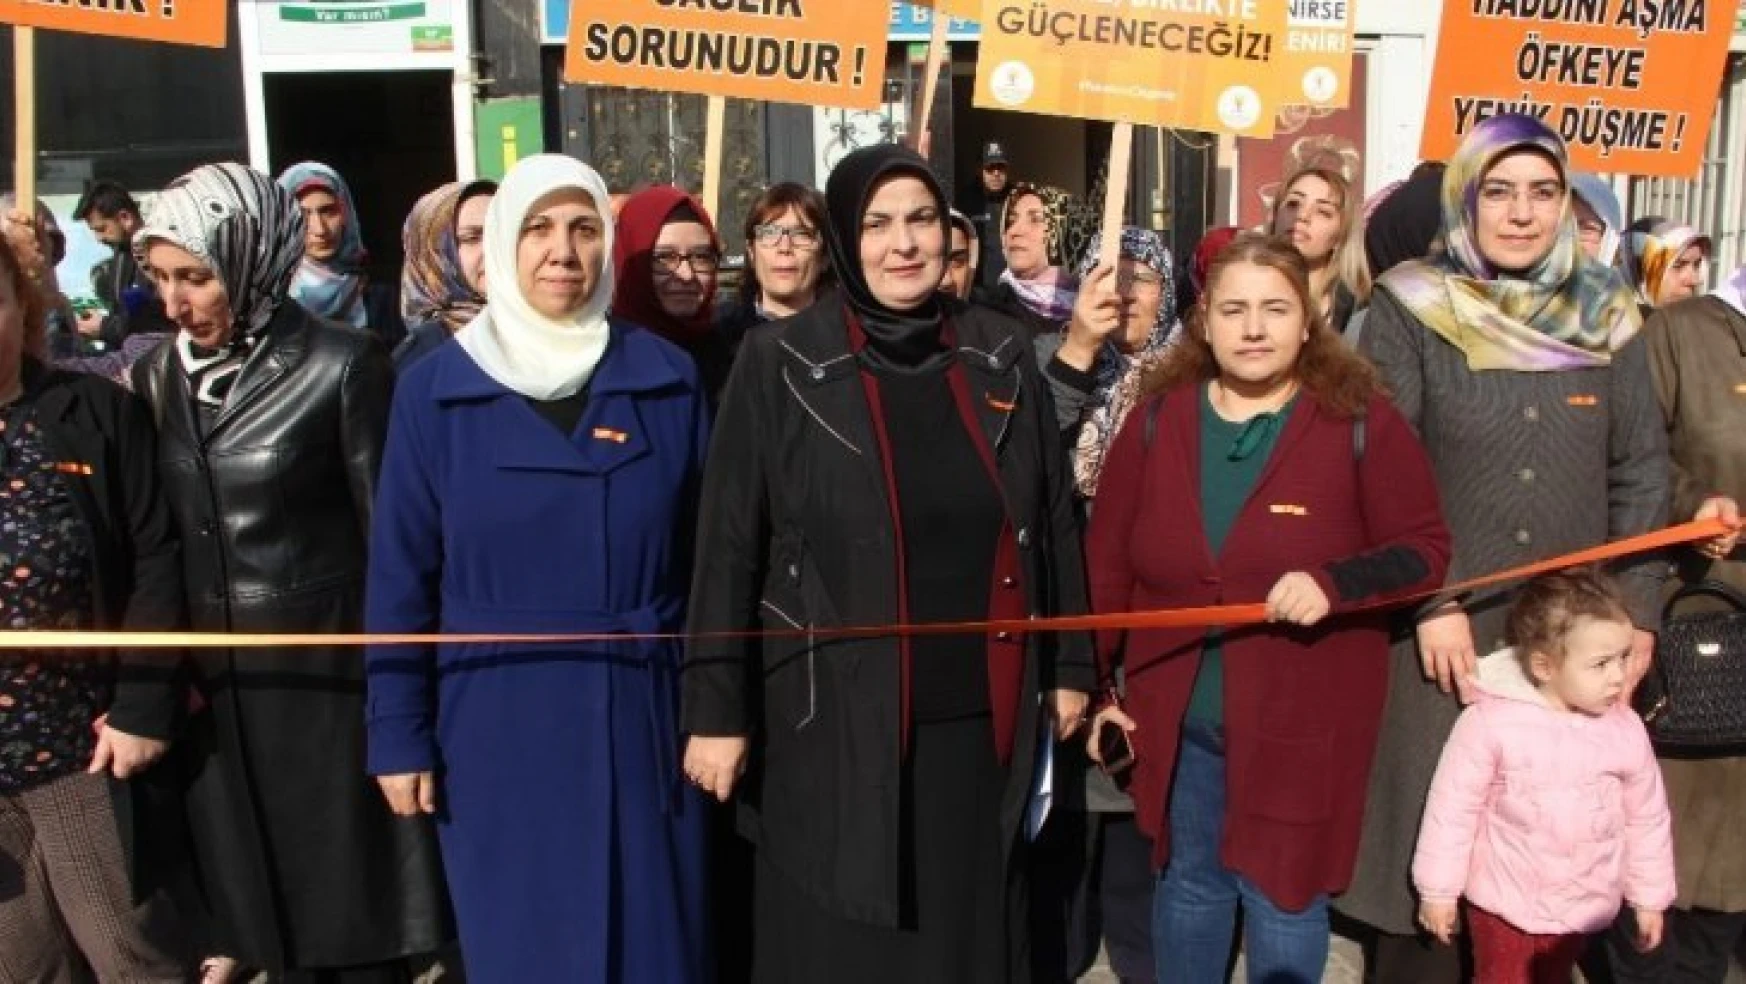 AK Partili kadınlar yürüyüş düzenledi